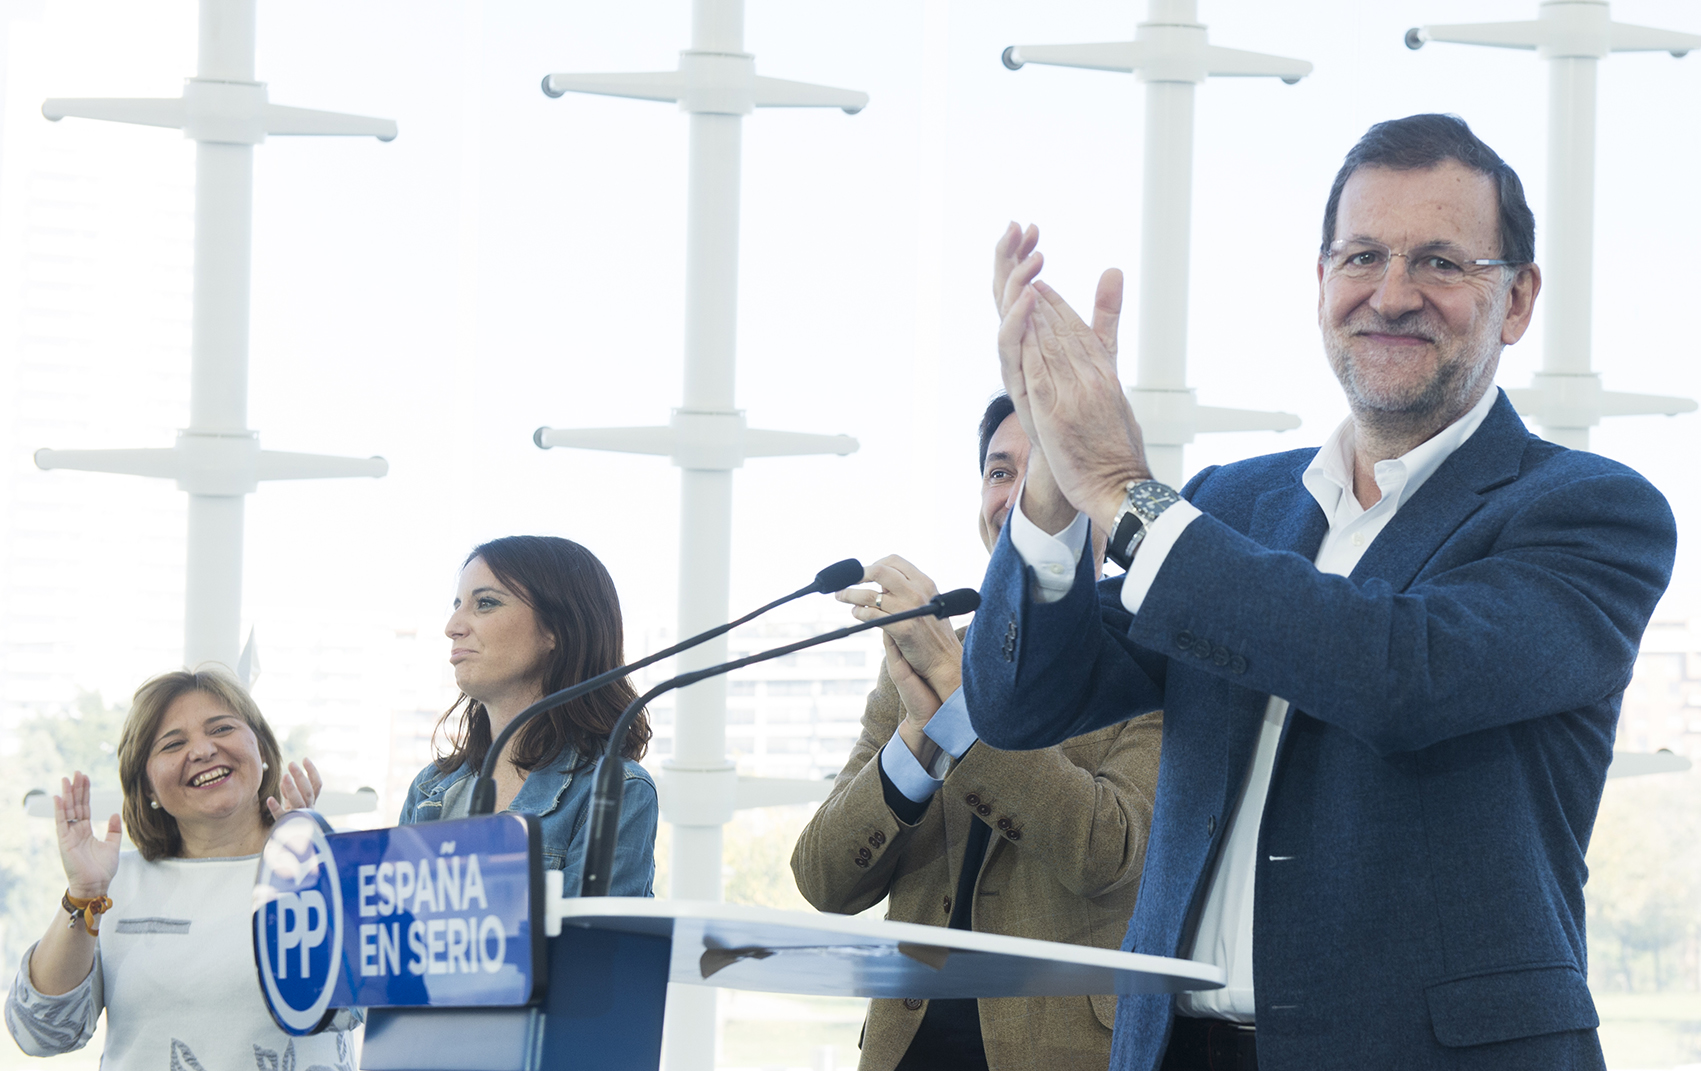 El candidato del PP, Mariano Rajoy, en Valencia durante el acto de presentación de su programa electoral. Foto: EFE